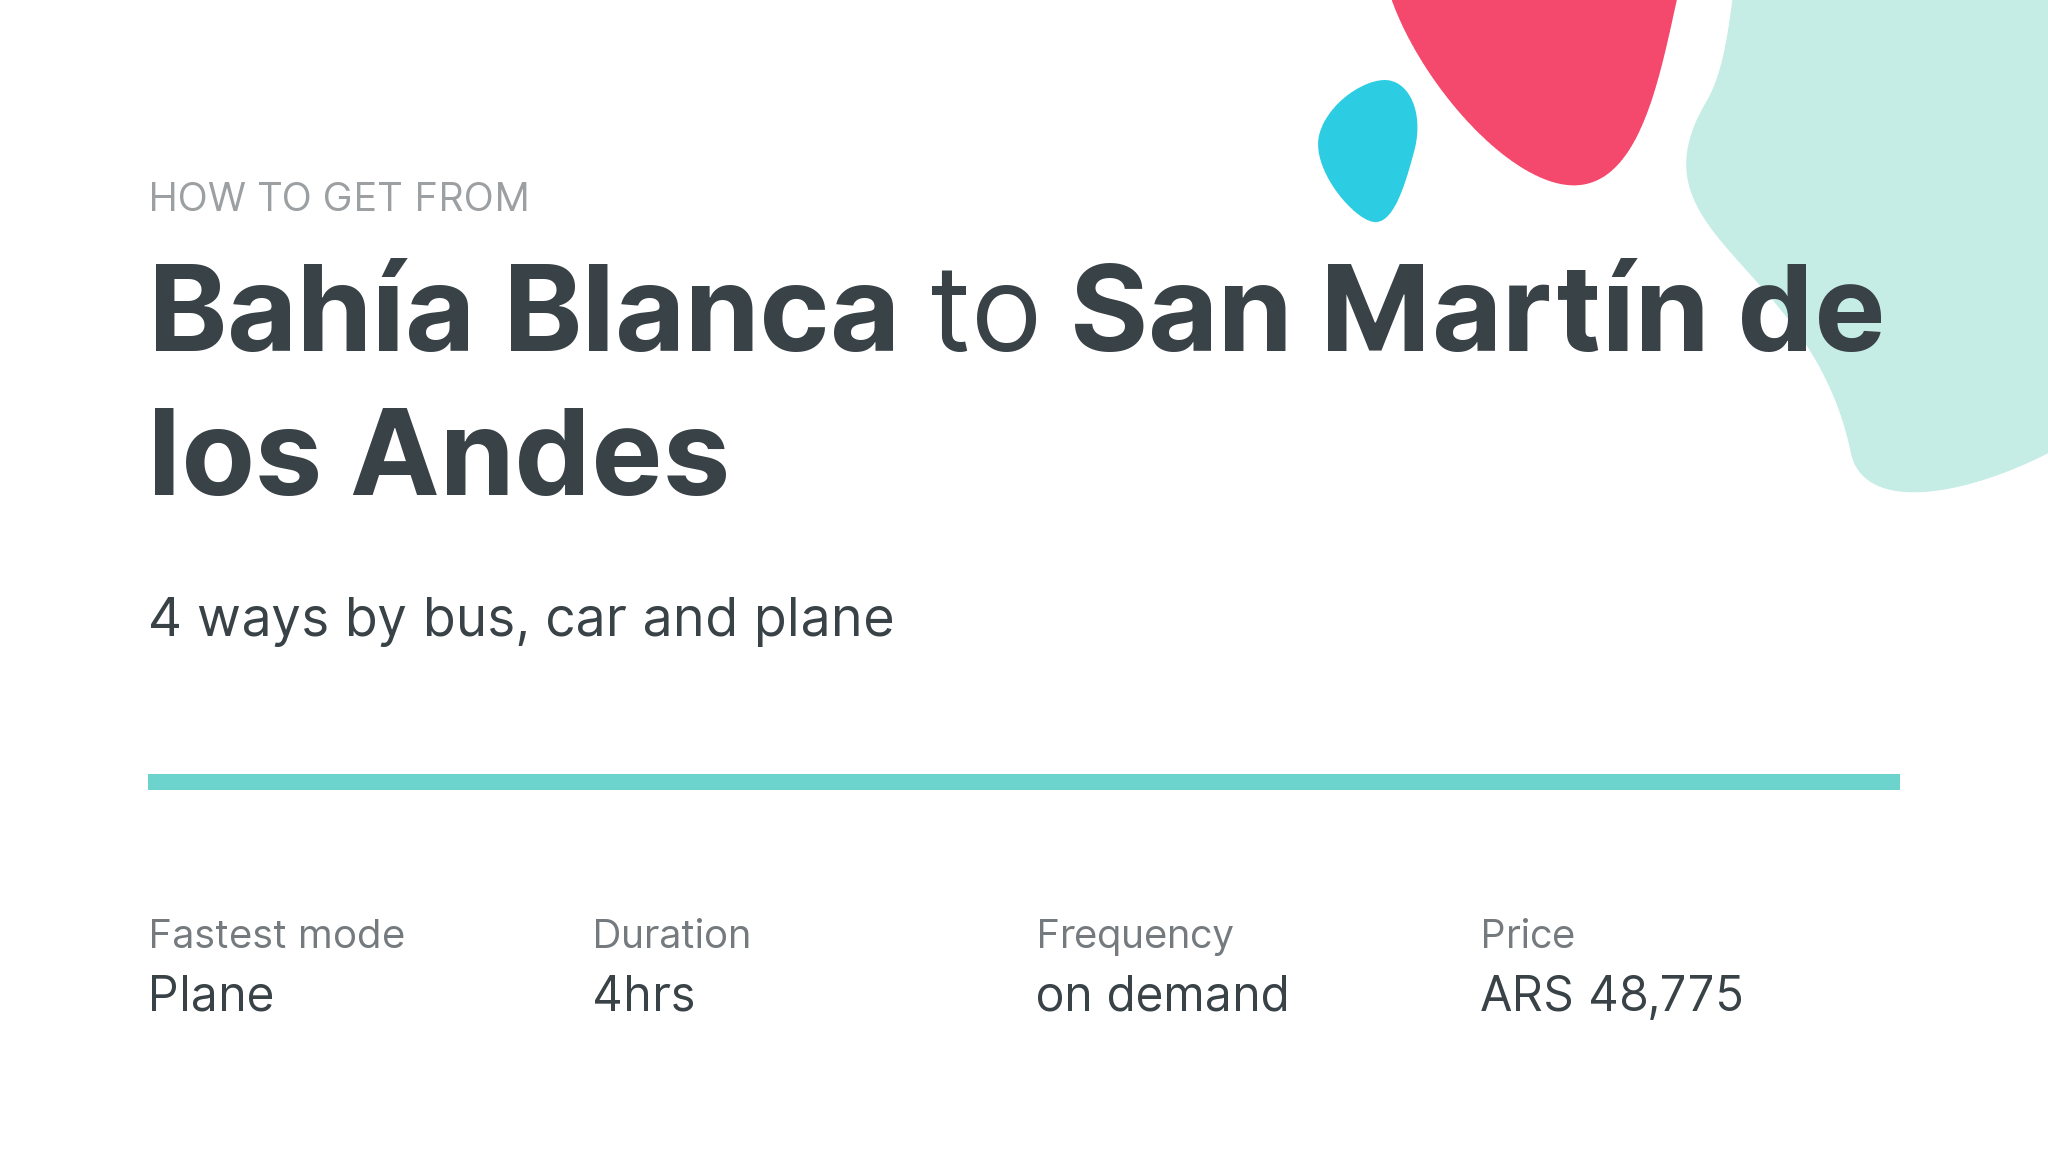 How do I get from Bahía Blanca to San Martín de los Andes